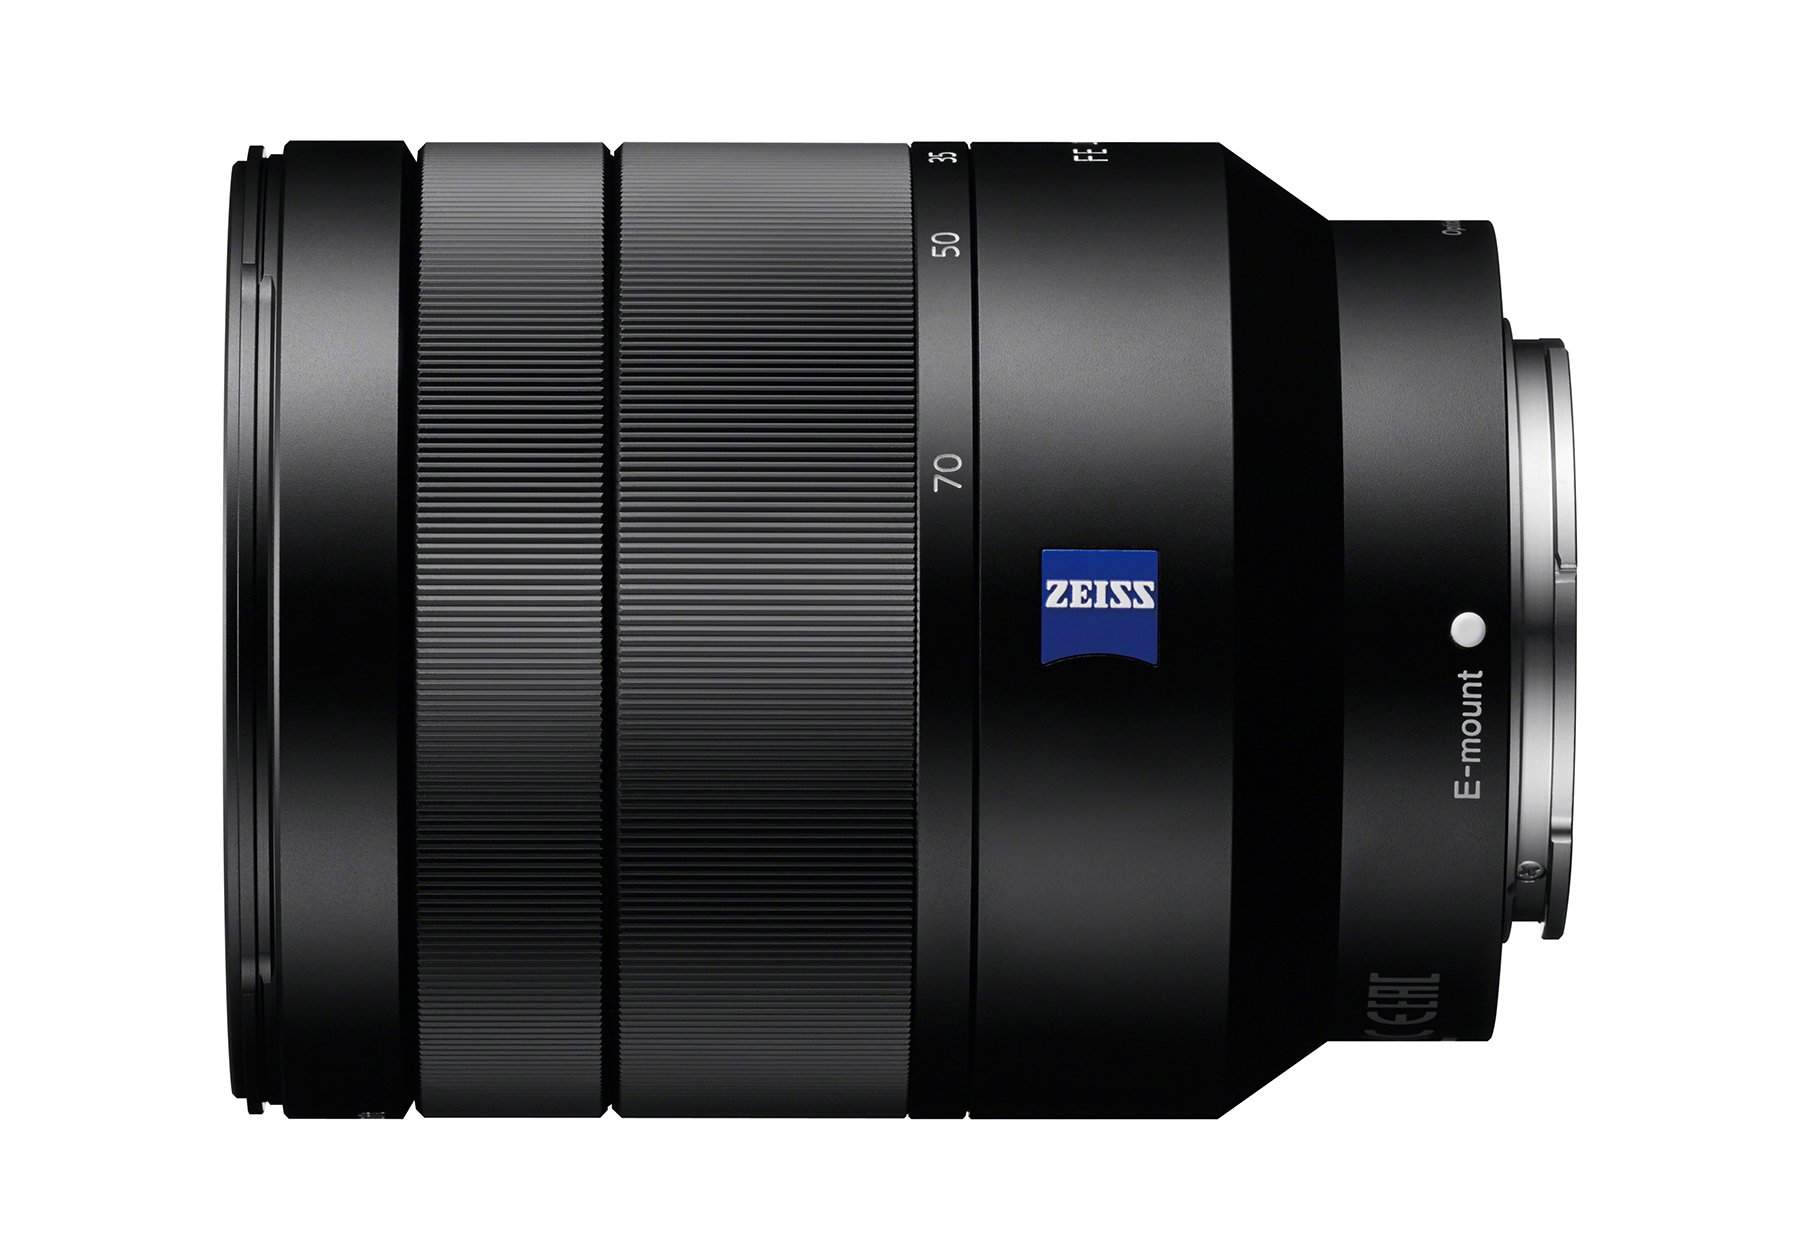 Sony 24-70mm f/4 Vario-Tessar T FE OSS Interchangeable Full Frame Zoom Lens